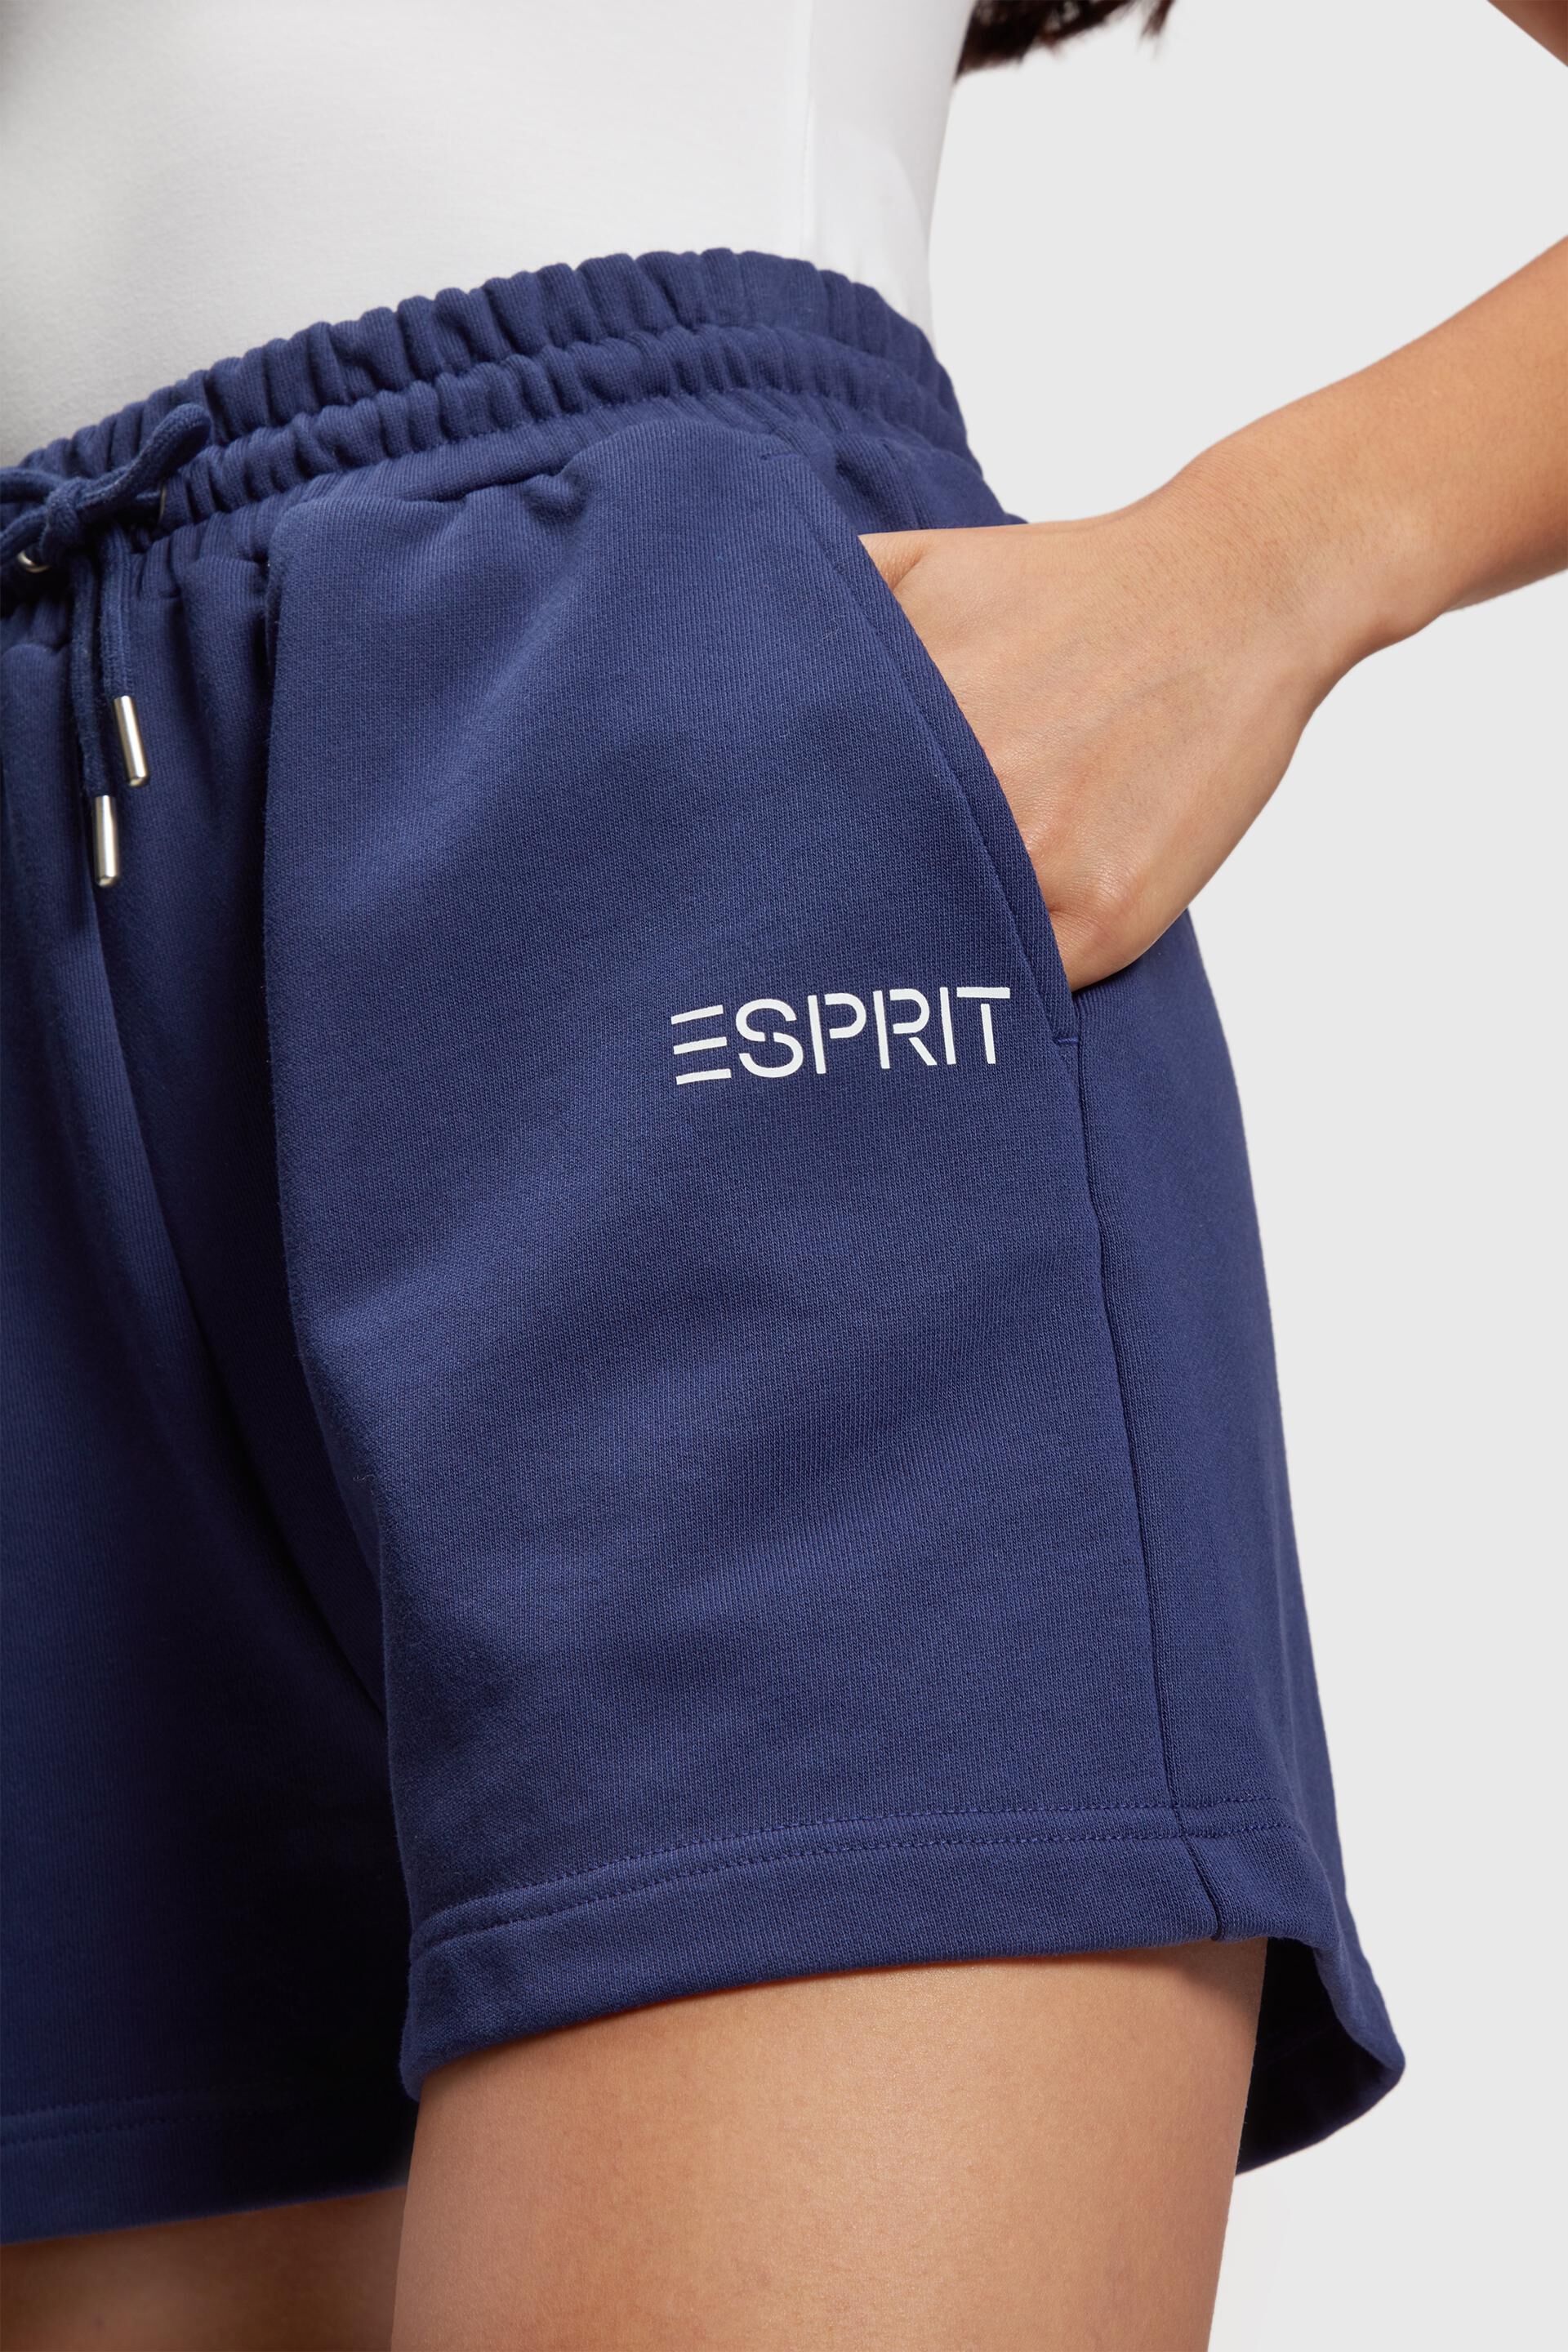 Esprit Damen Jersey-Shorts